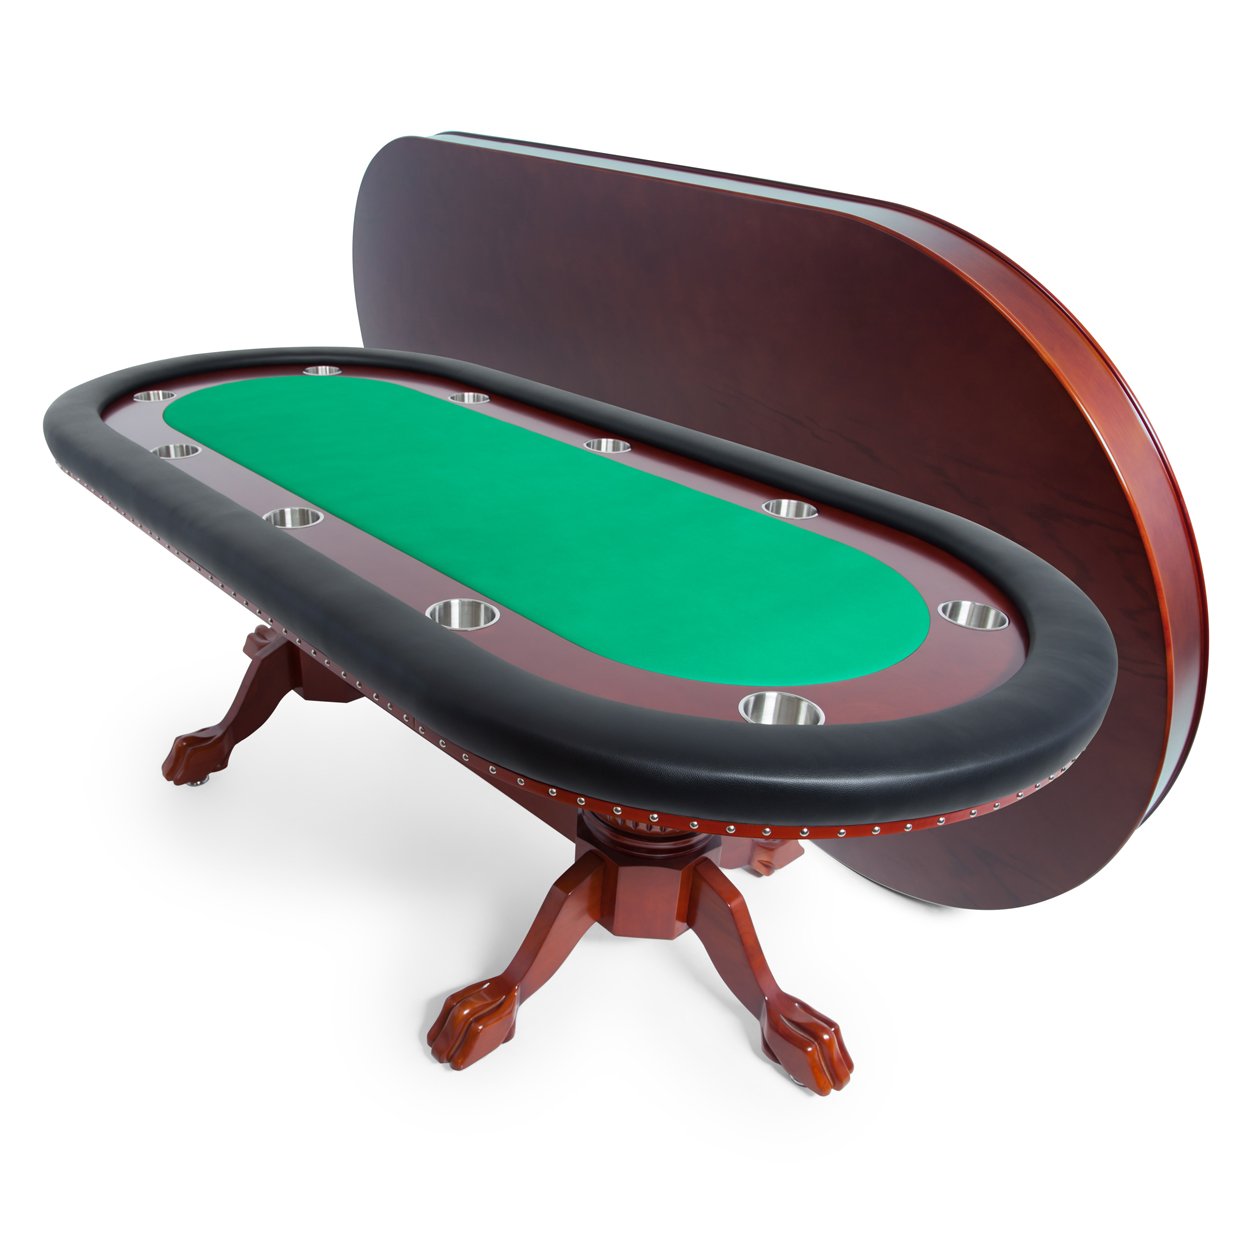 BBO The Rockwell Classic Mahogany Poker Table (2BBO-RW)